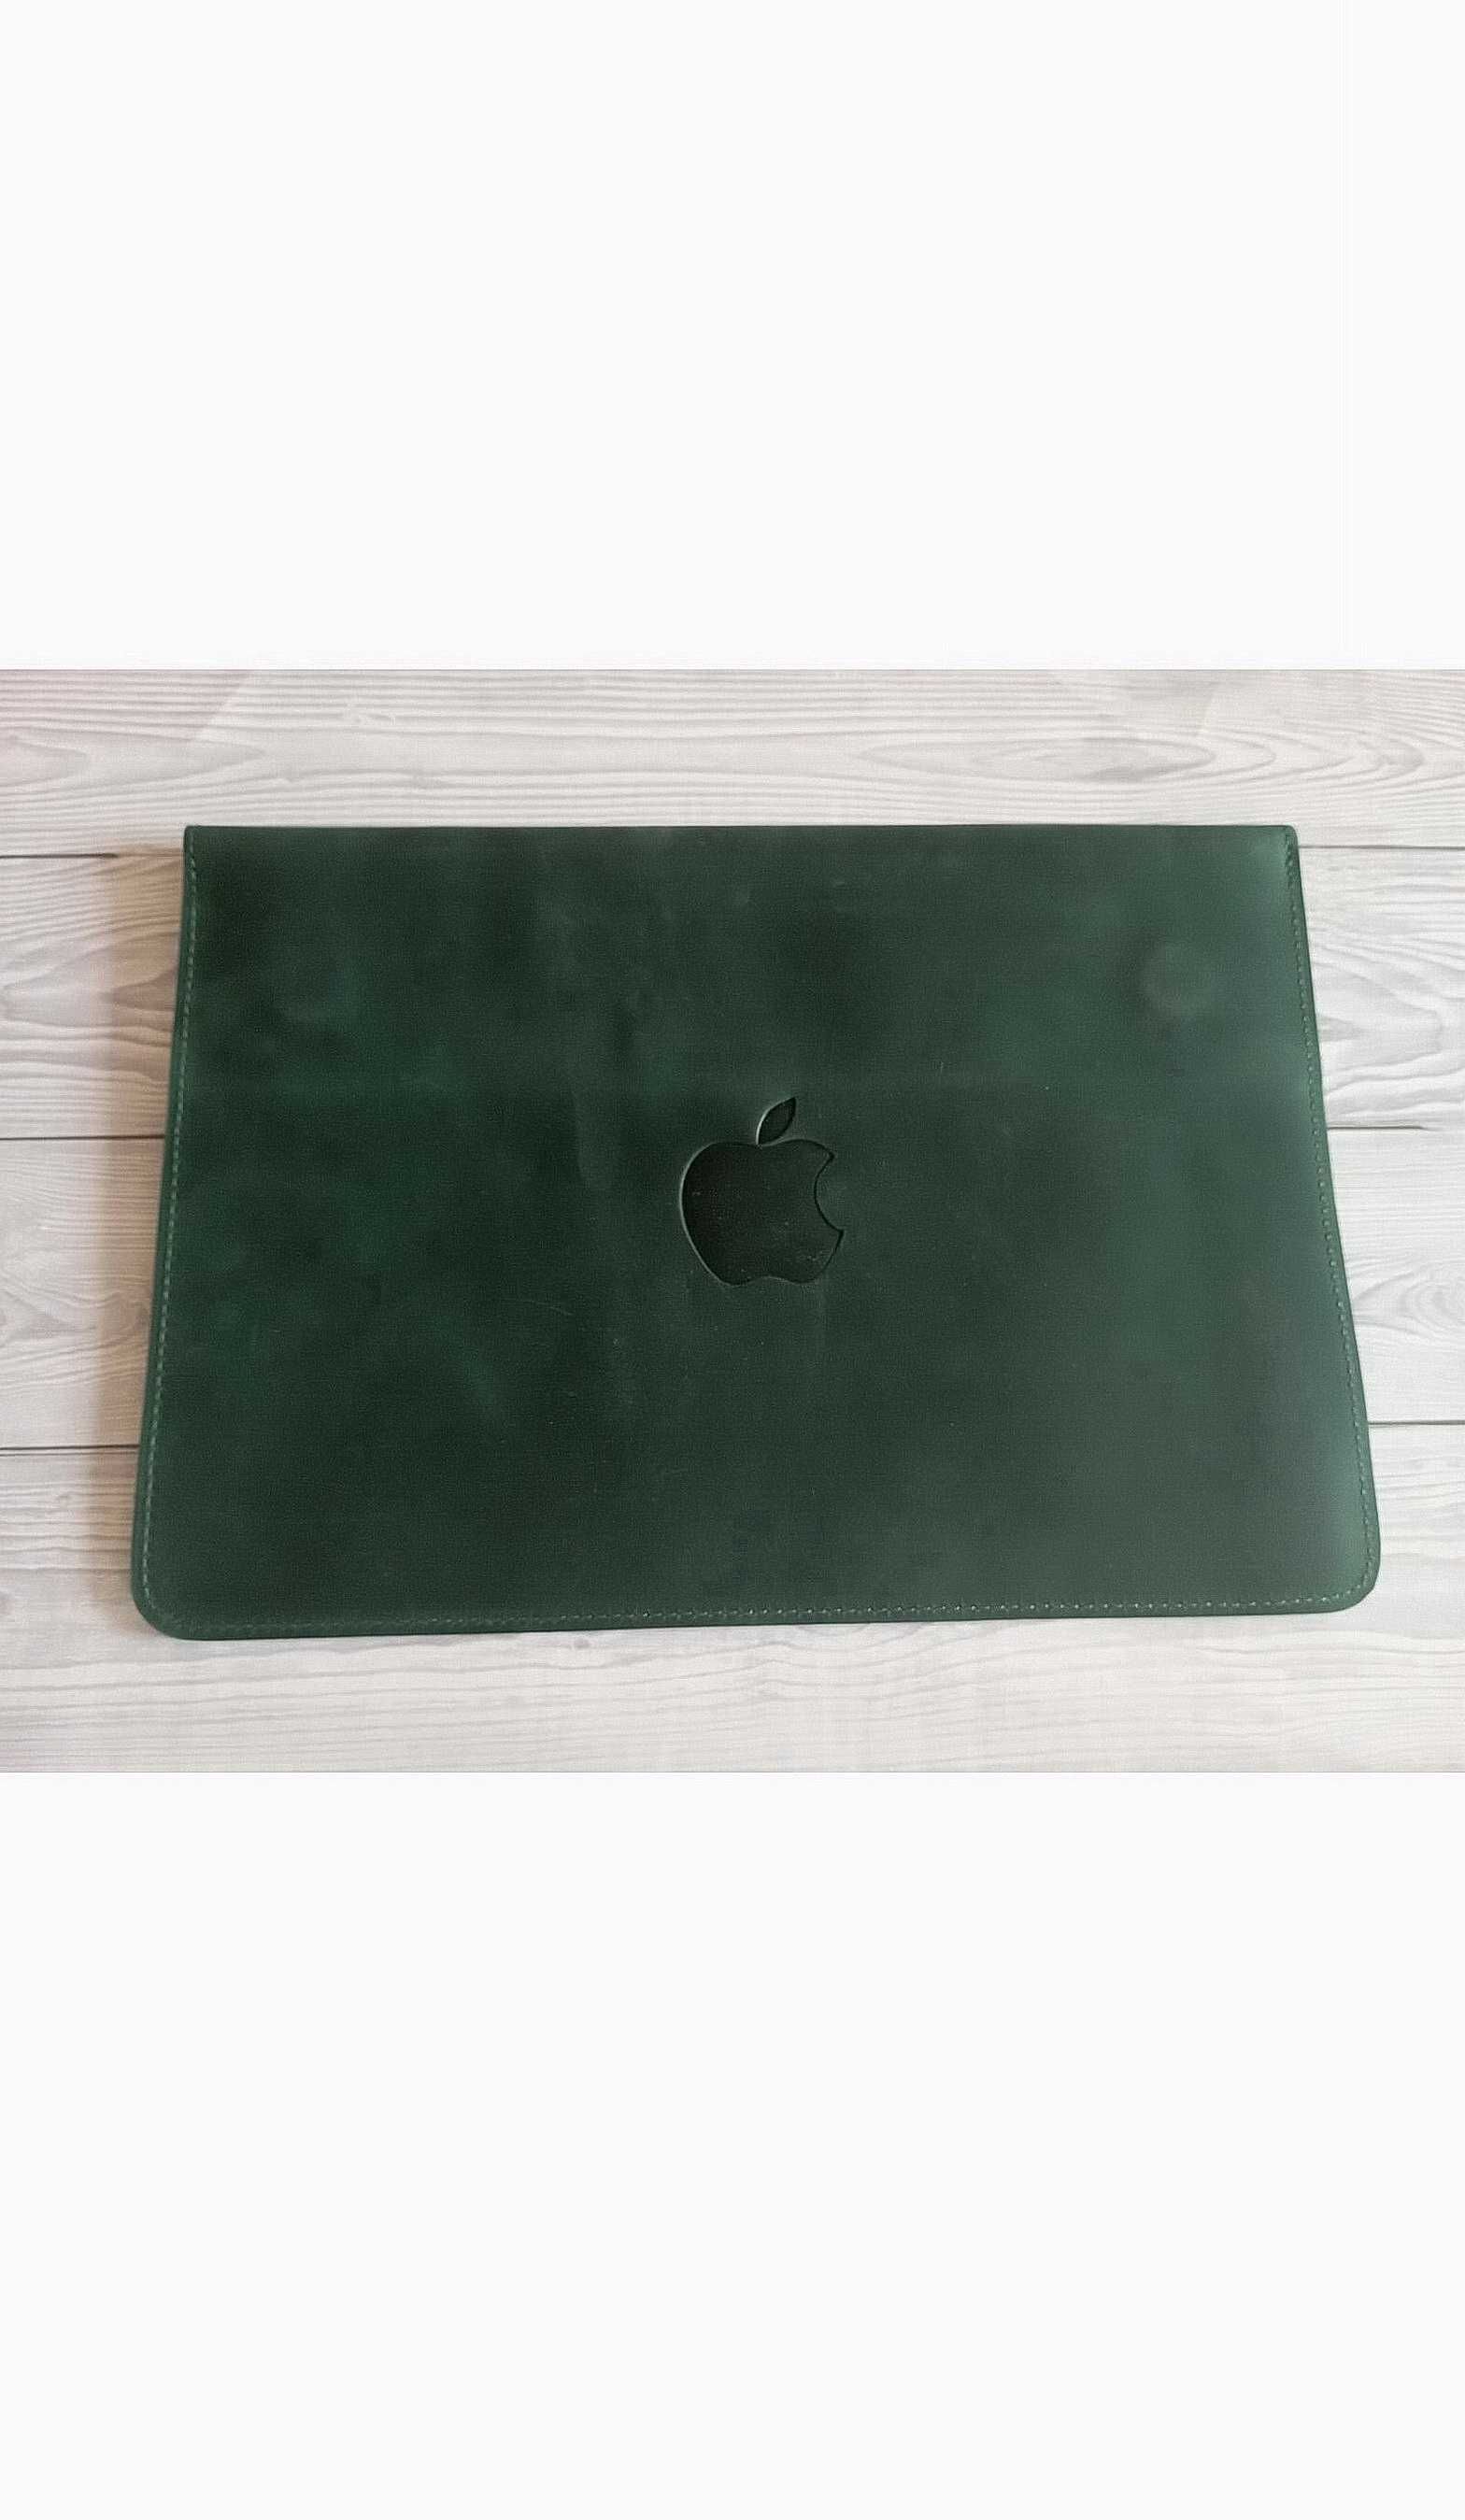 Чехол для ноутбука Macbook Макбук Pro/Air 13,кожаный